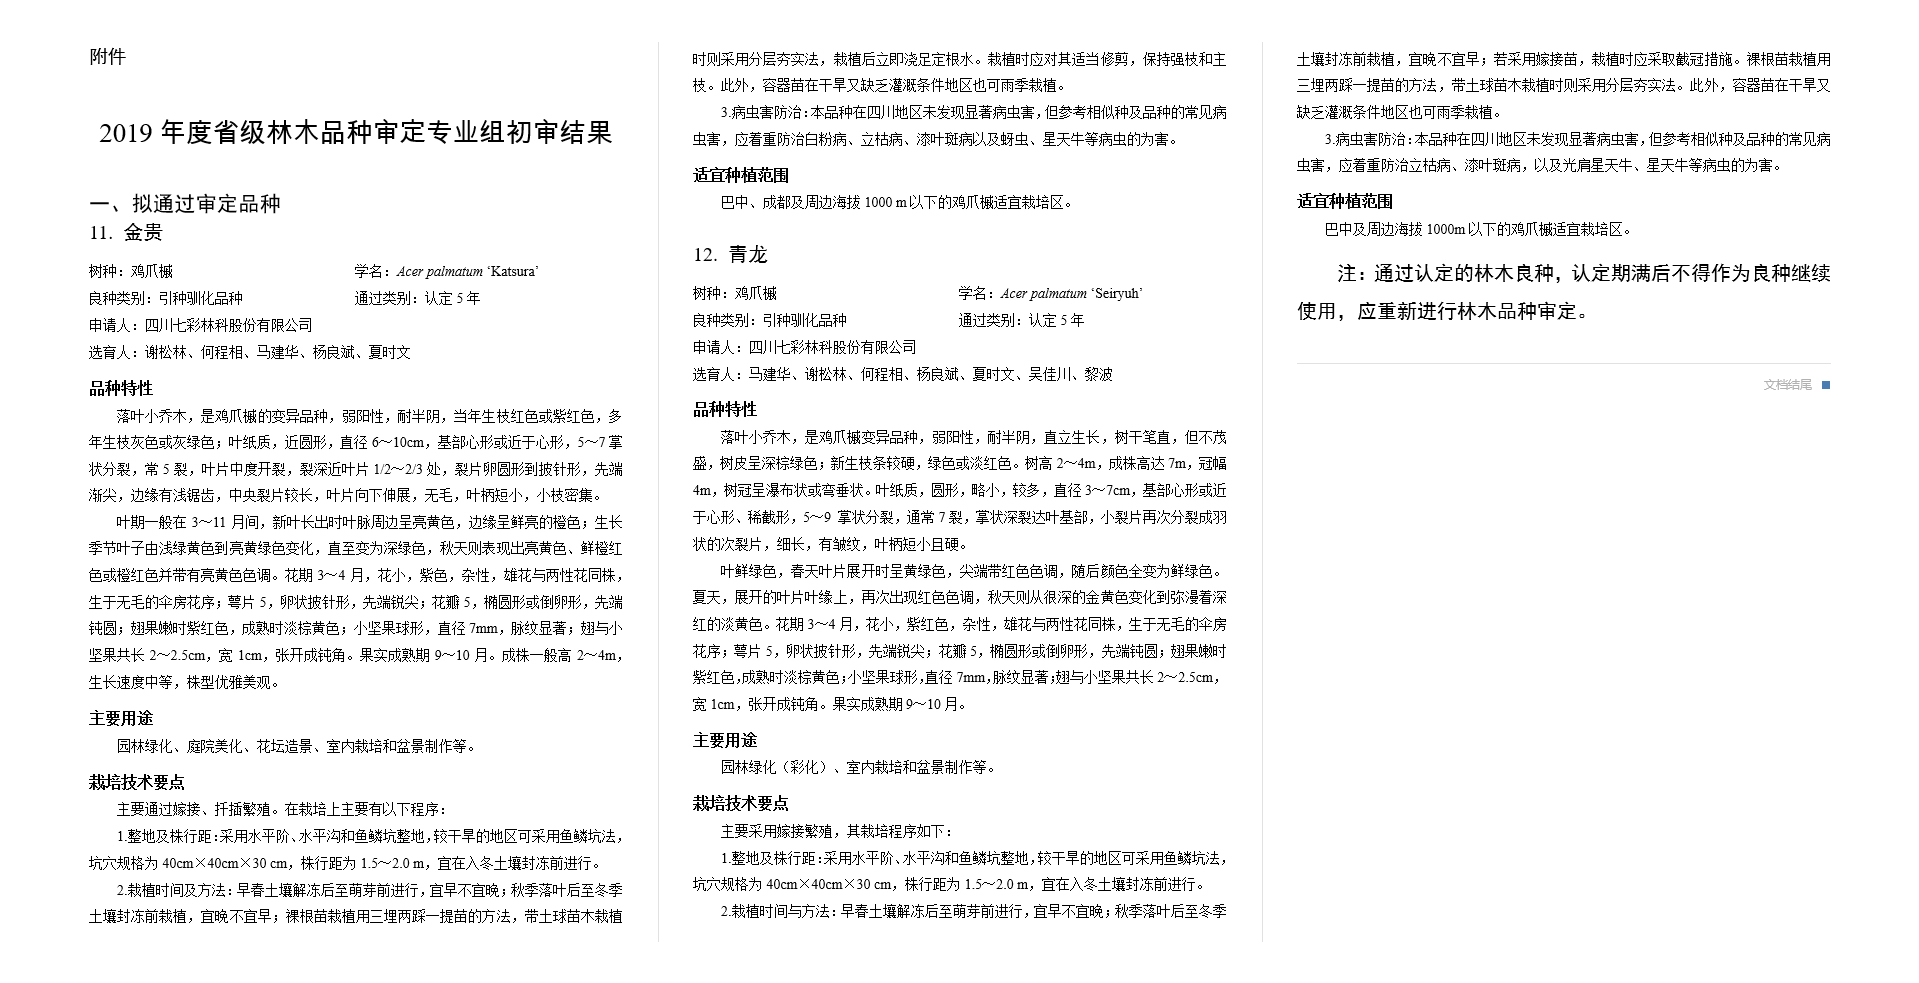 四川省林木品种审定委员会关于2019年度专业组初审结果的公示